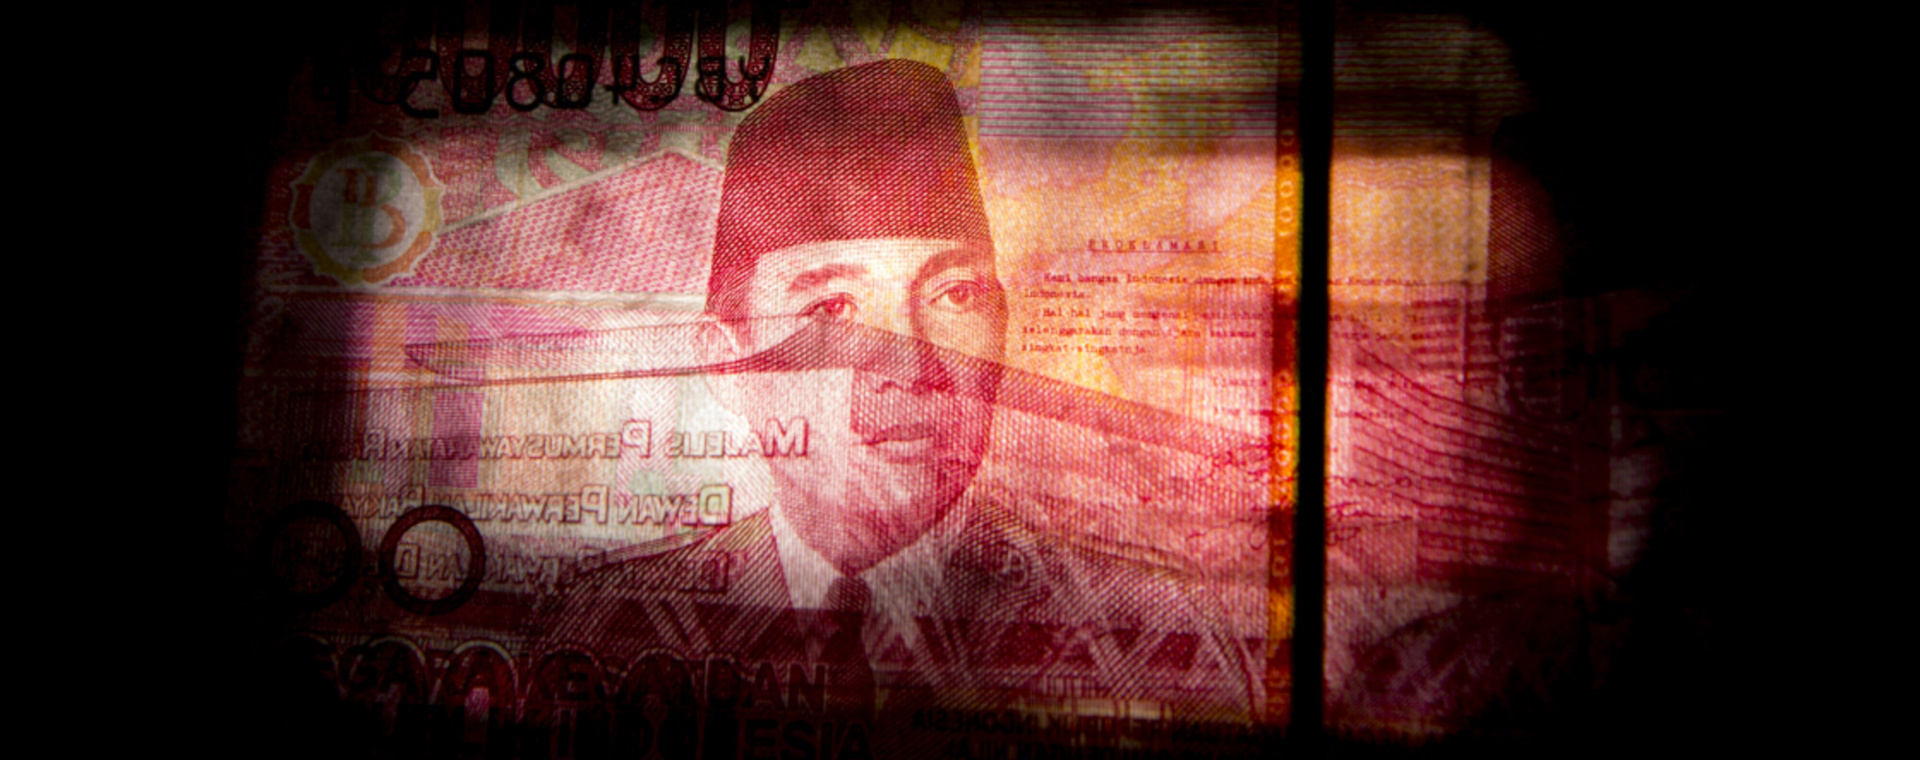 Potret wajah Mantan Presiden Sukarno dalam uang lembar Rp100.000. Bank Indonesia menyatakan akan menahan suku bunga BI stabil untuk sementara waktu demi menjaga rupiah dari volatilitas pasar global, meskipun inflasi Indonesia tercatat bergerak rendah. - Bloomberg/Brent Lewin